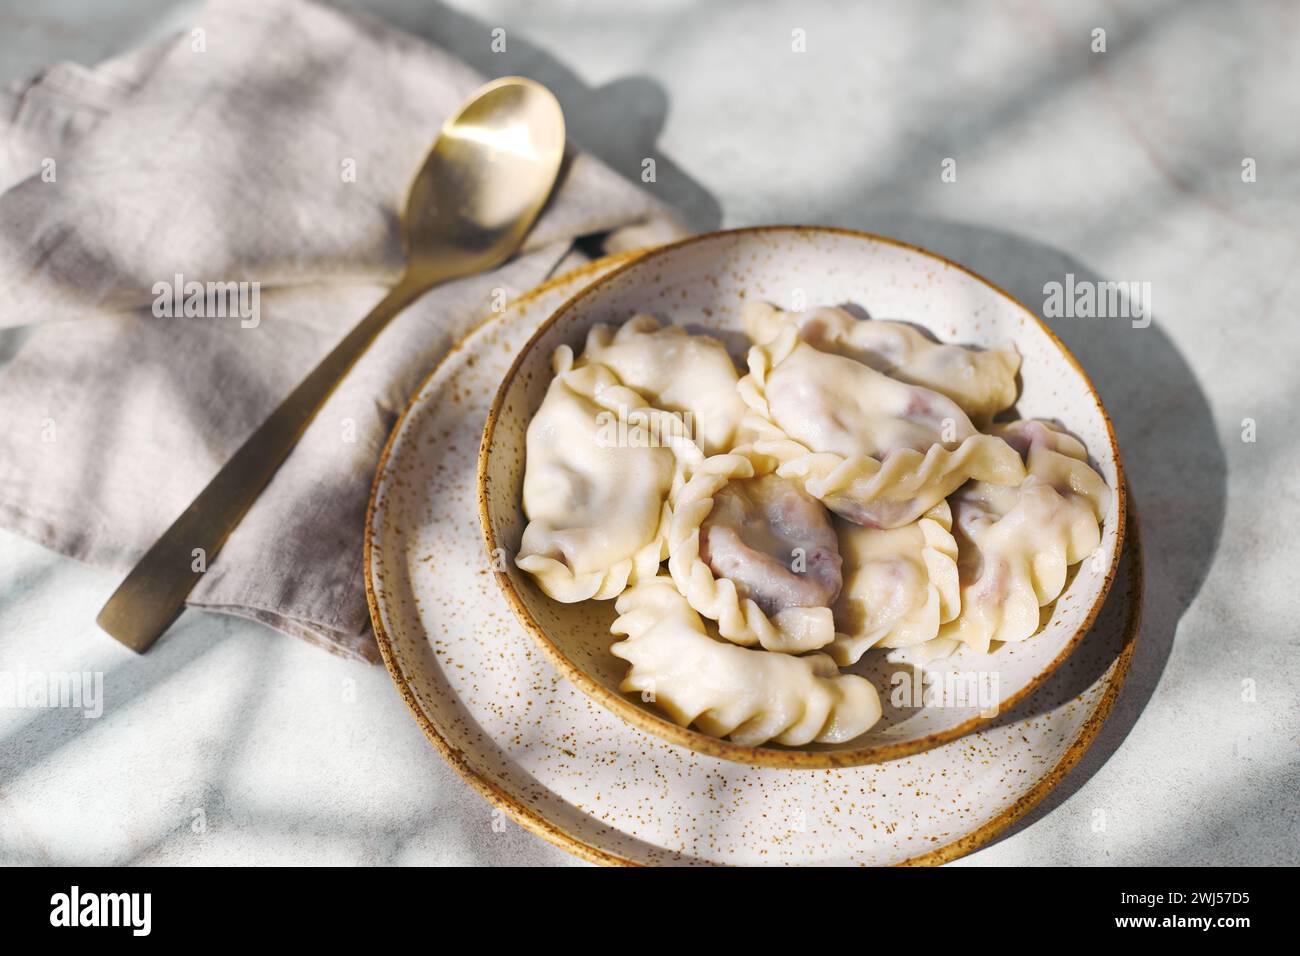 Gnocchi con ciliegie con panna acida e zucchero. Piatto tradizionale di cucina russa, Ucraina e bielorussa conosciuto come Vareniki Foto Stock